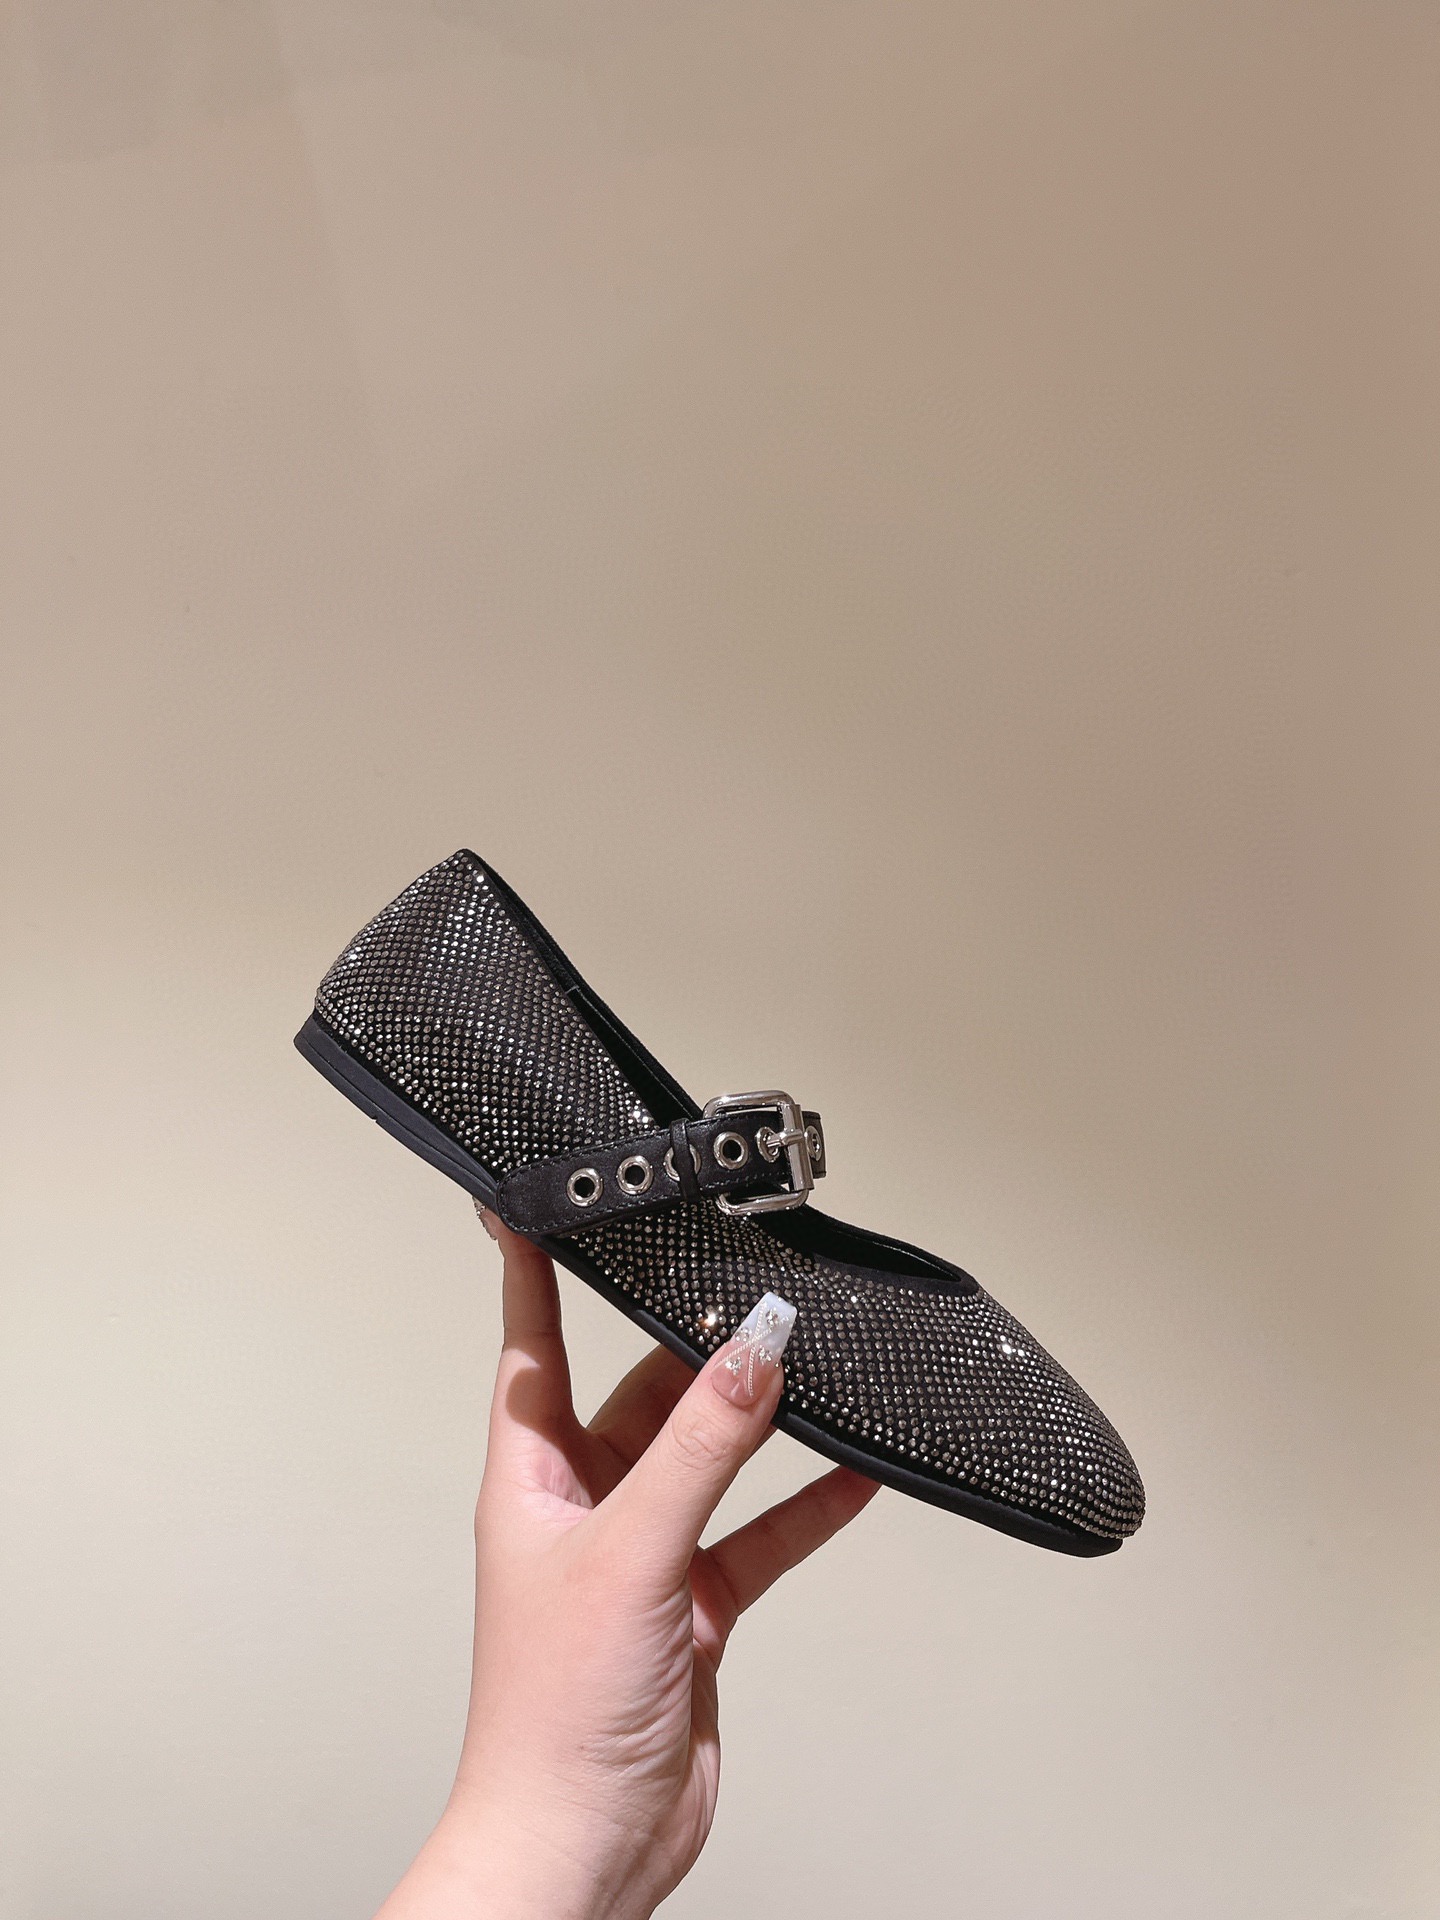 缪缪MIuMiu经典芭蕾舞鞋新品以芭蕾的灵动意韵融于日常以现代笔触刻画舞鞋经典轮廓！黑色钻饰皮质款芭蕾舞